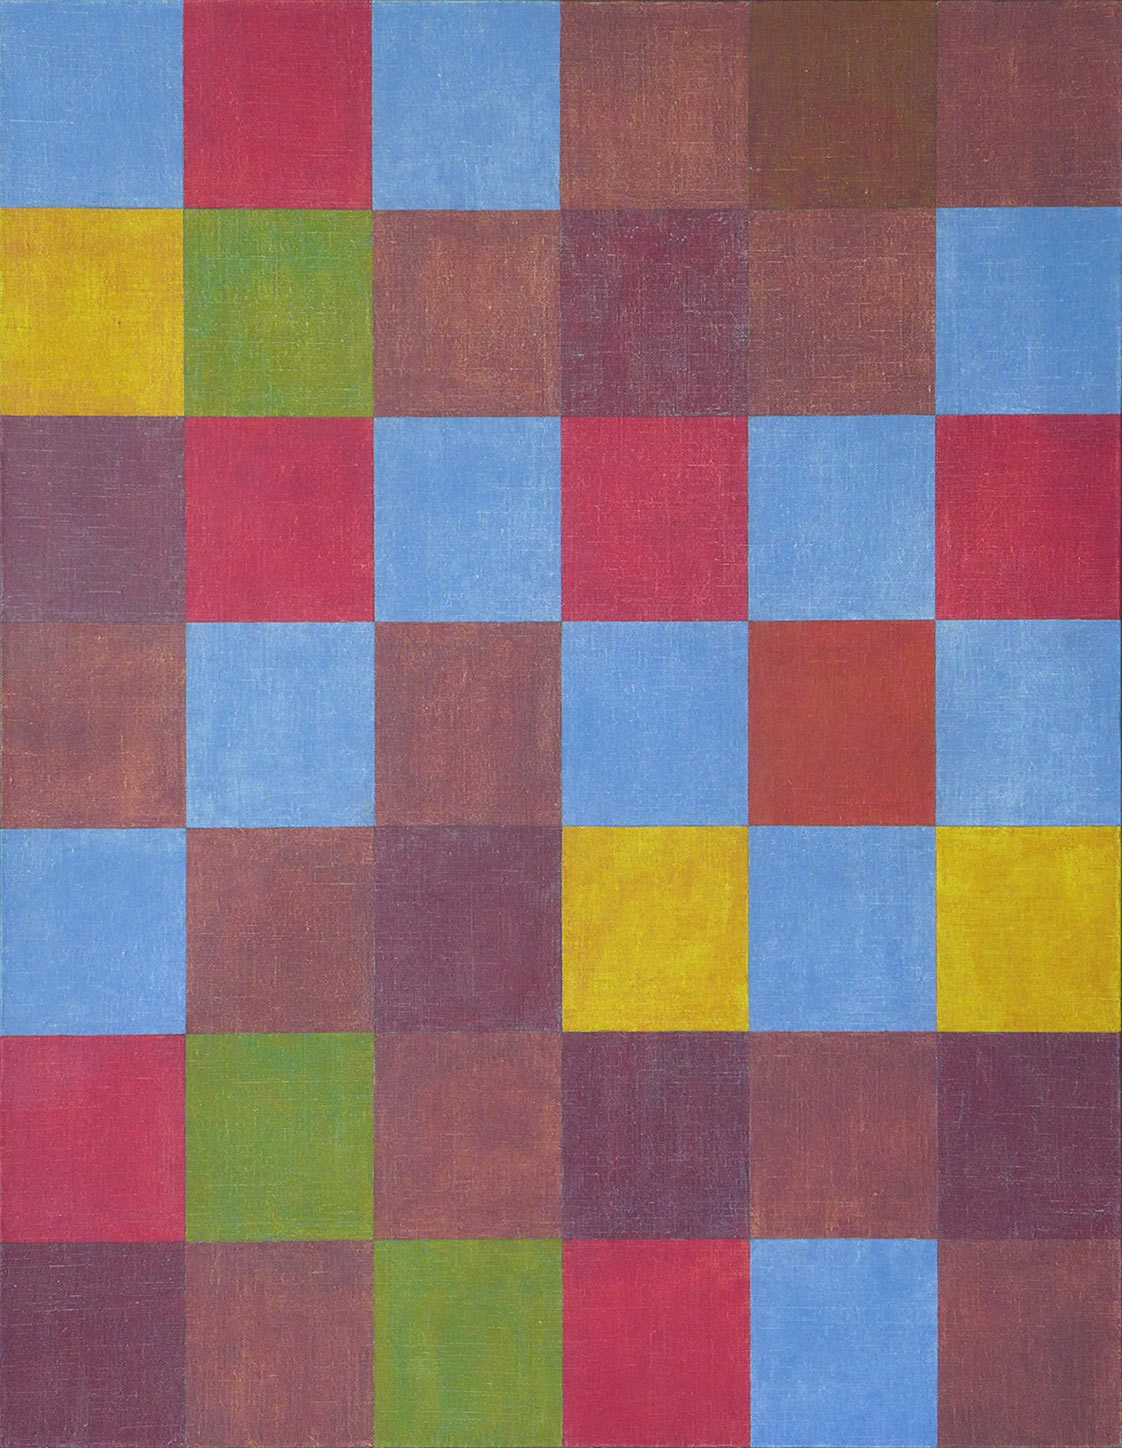 En hommage à Paul Klee, une relecture sérielle de son tableau "New Harmony" dessiné avec la même géométrie et peint avec les couleurs, bleu, rouge et jaune, disposées selon les nombres 2, 3 et 5.